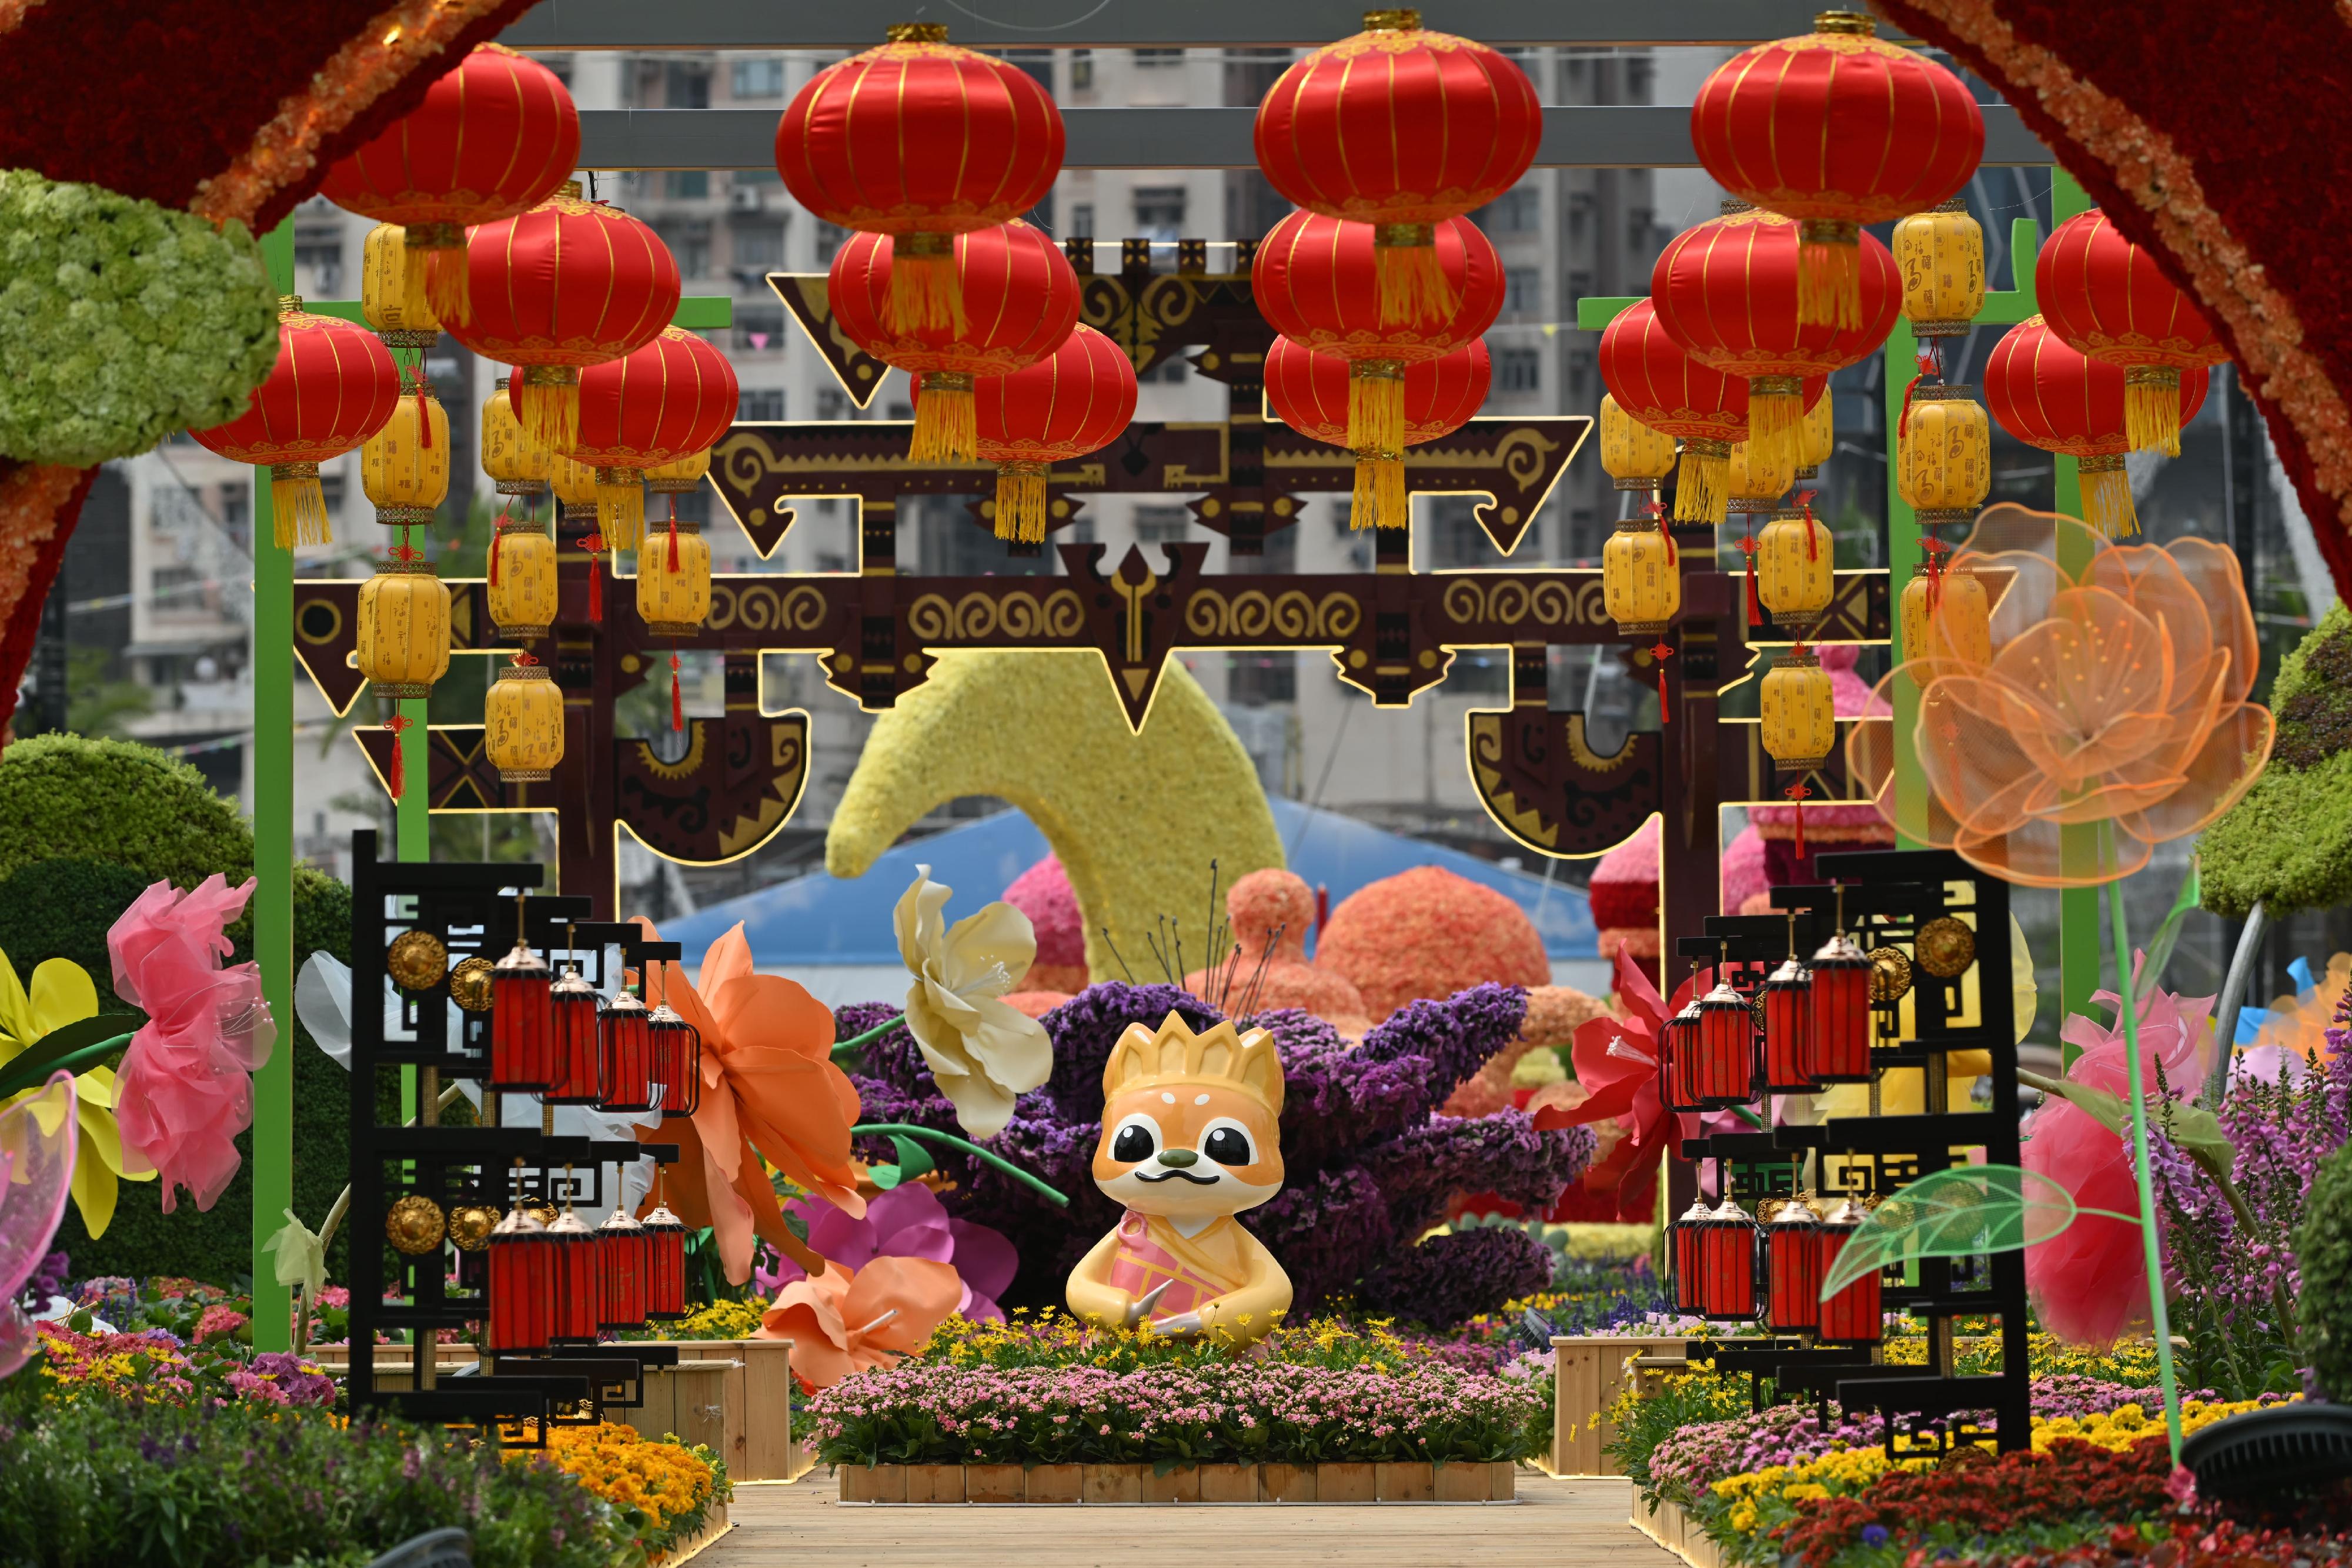 二○二四年香港花卉展覽（花展）明日（三月十五日）至三月二十四日在維多利亞公園舉行。今年花展的主題花是香彩雀，以「雀躍全城」為主題。花展會場中軸線的園林造景以童話故事為主題，充滿童趣和夢幻氣息。圖示以《西遊記》為主題的園林造景。